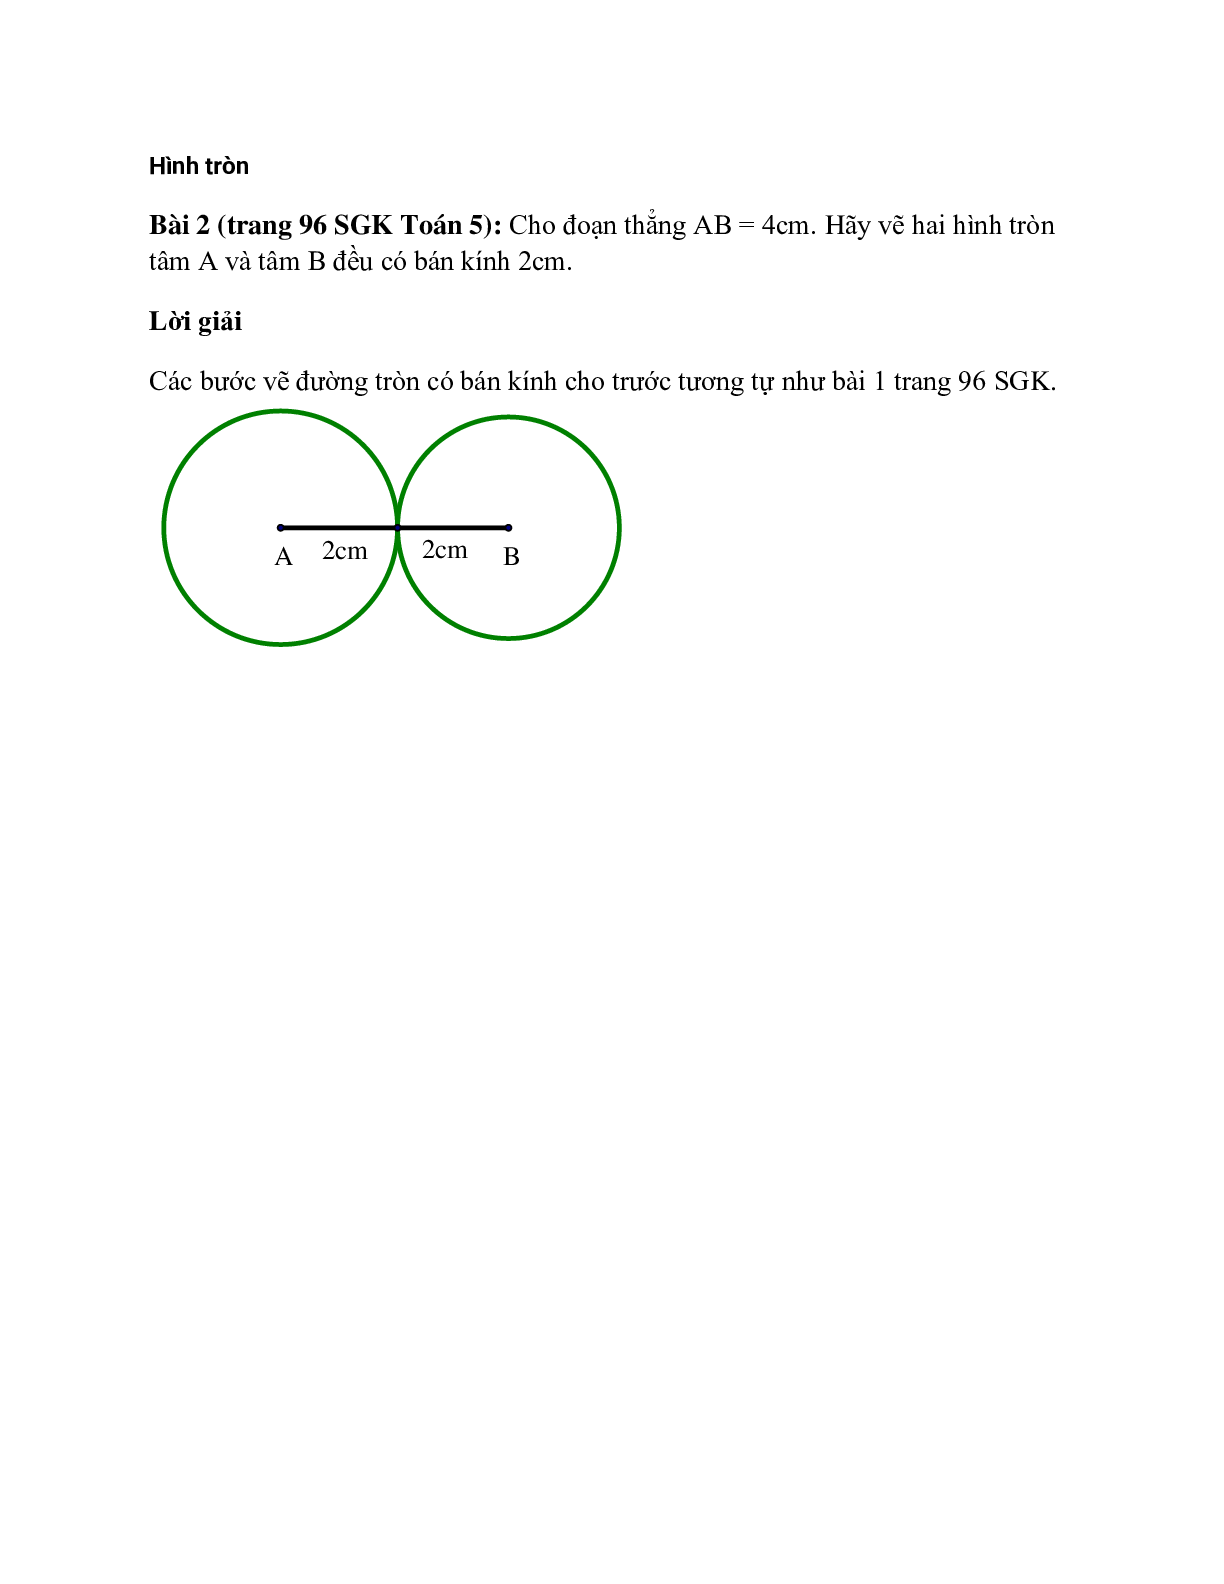 Cho đoạn thẳng AB = 4cm. Hãy vẽ hai hình tròn tâm A và tâm B đều có bán kính 2cm (trang 1)